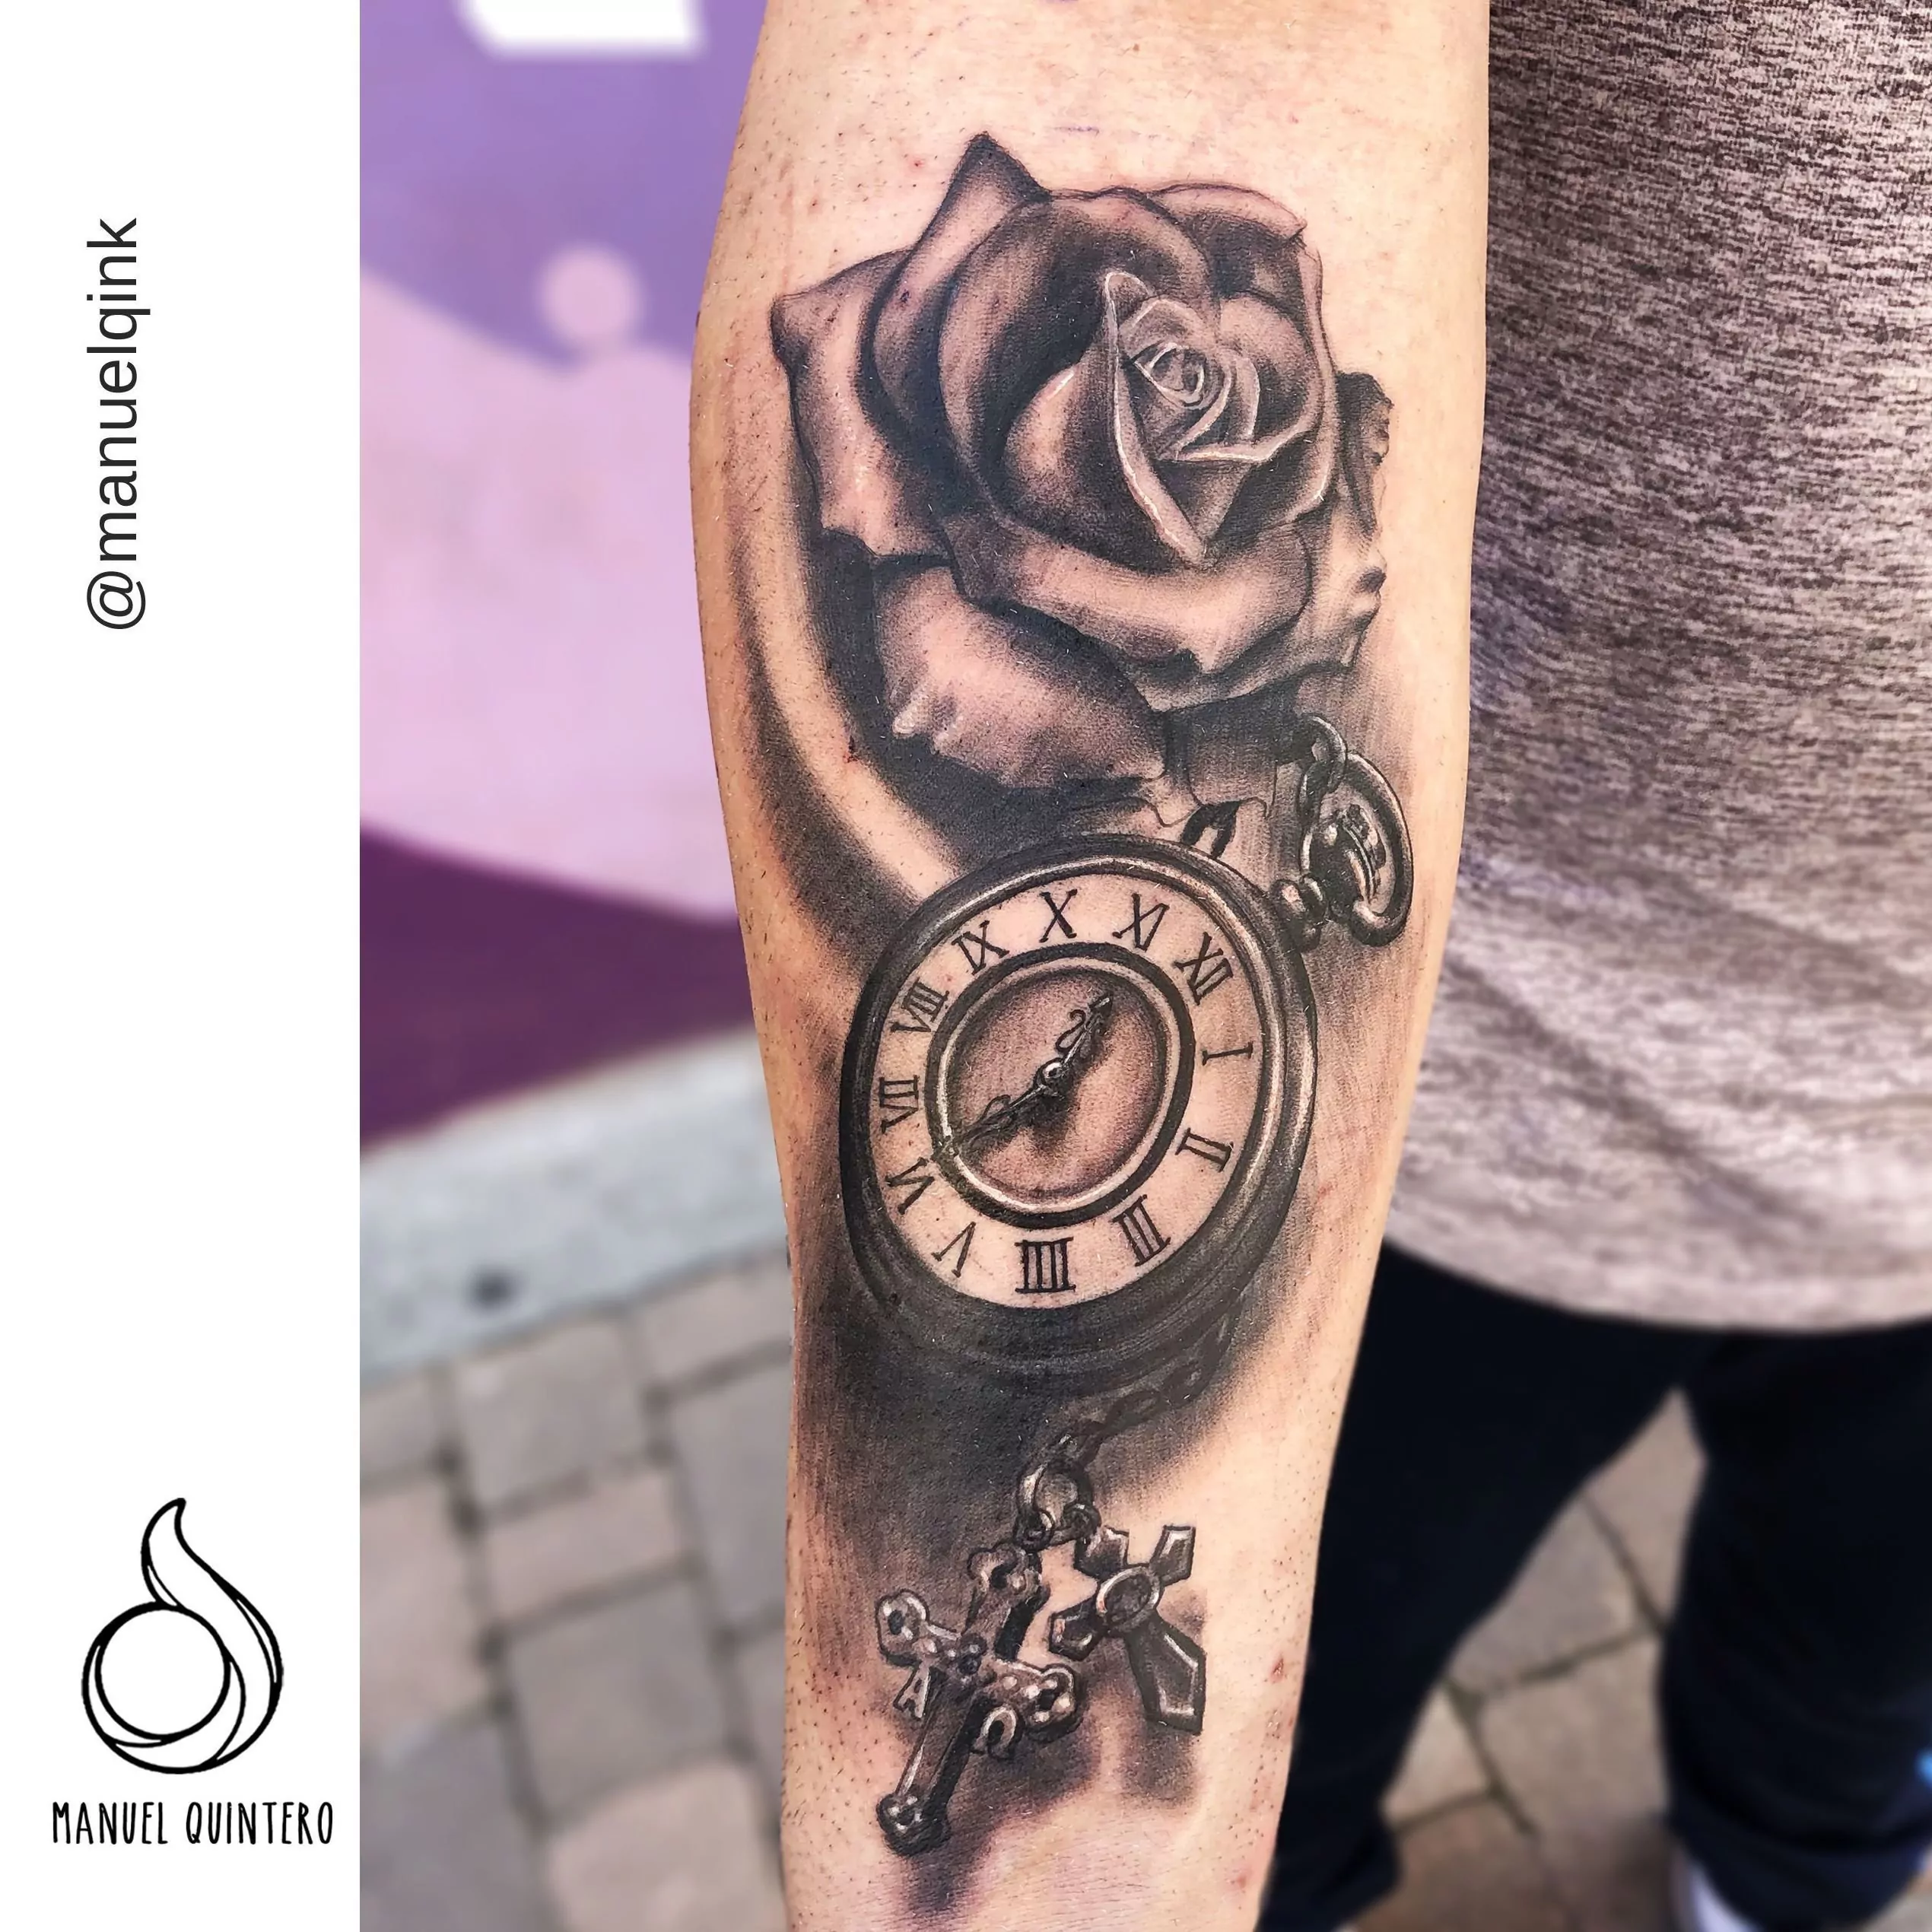 Tatuaje de un reloj con una rosa y un rosario estilo realismo en el antebrazo